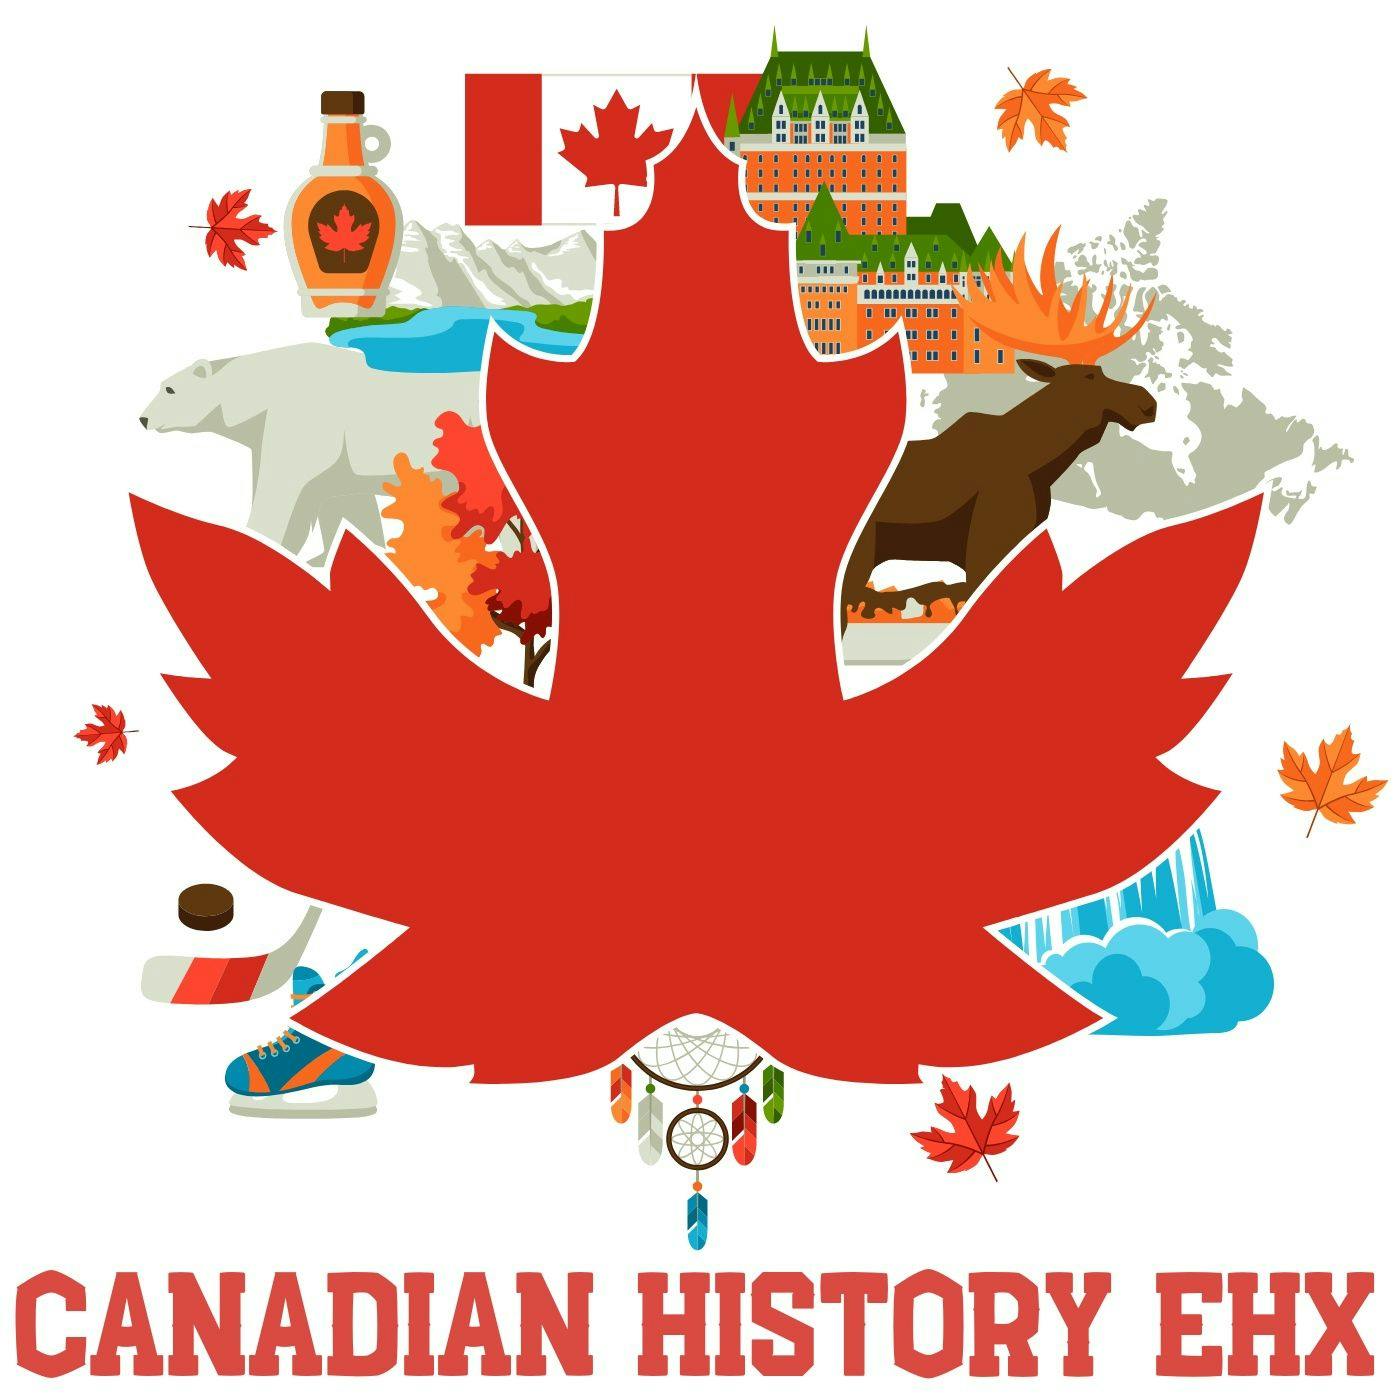 Canada Year-By-Year: 1890